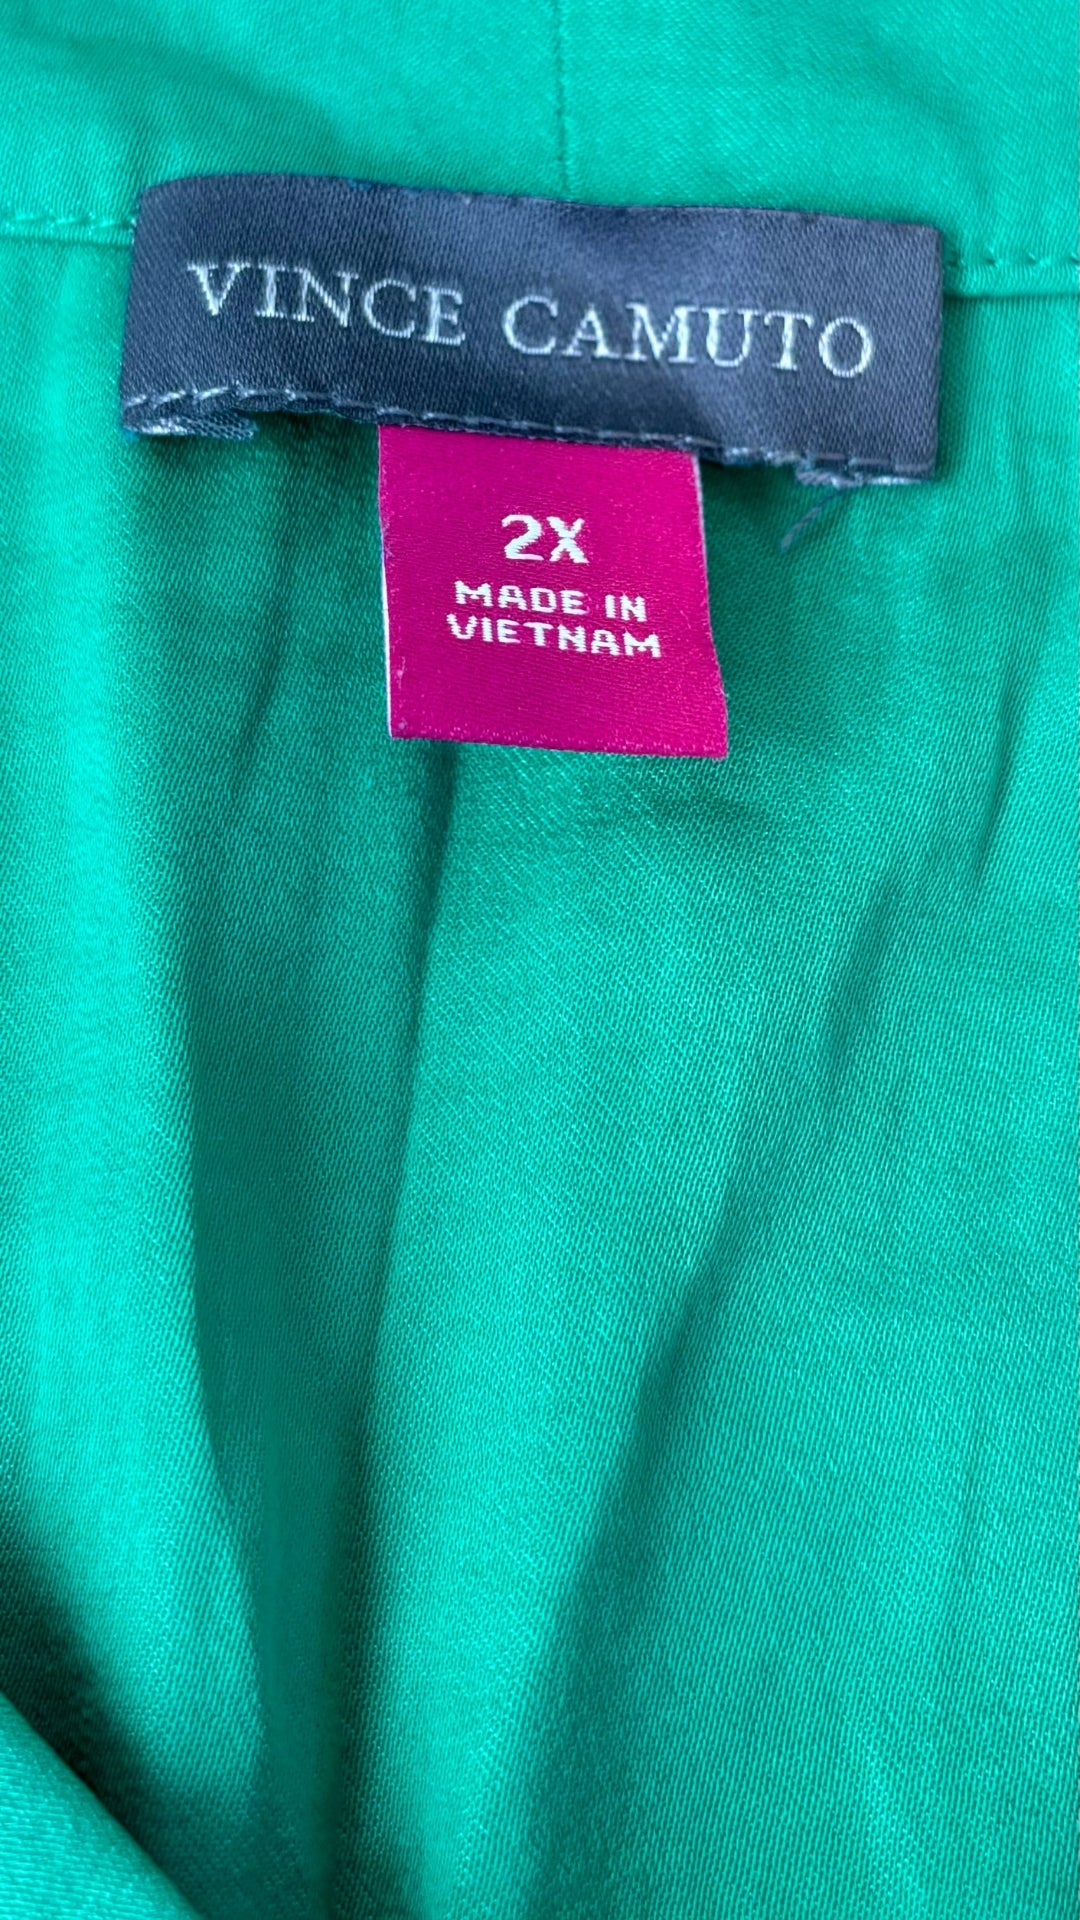 Camisole soyeuse vert gazon Vince Camuto, taille 2X. Vue de l'étiquette de marque et taille.